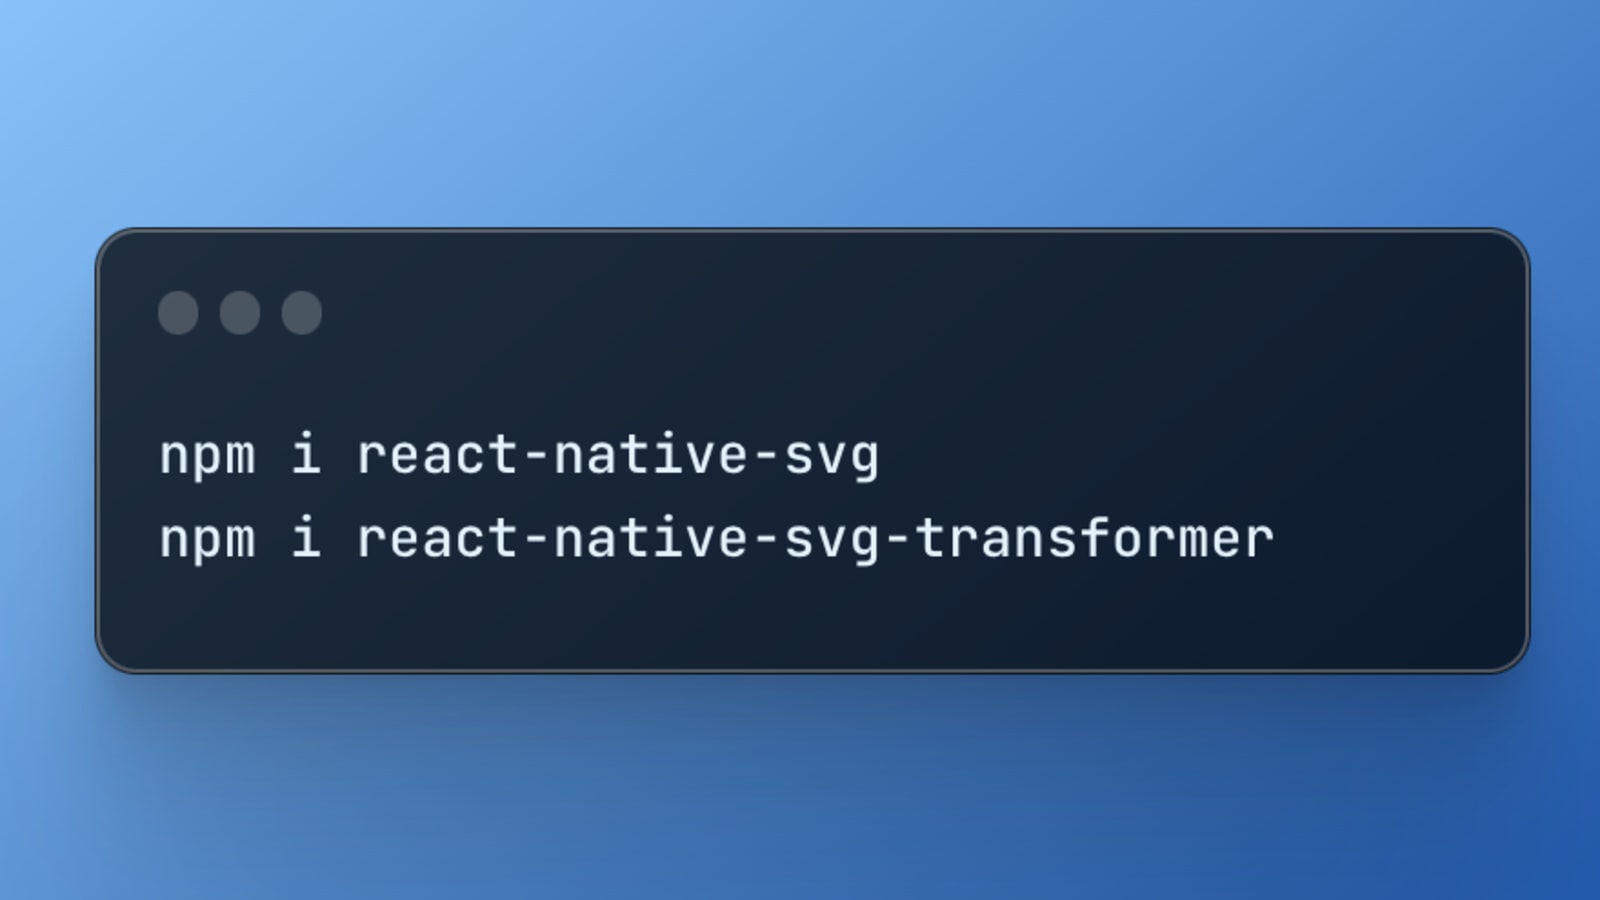 Sử dụng SVG trong React Native: Đang tìm cách để sử dụng thiết kế SVG trong ứng dụng React Native của bạn? Sử dụng SVG trong React Native là giải pháp hoàn hảo để tạo ra những thiết kế đẹp mắt và linh hoạt hơn bao giờ hết. Với tính năng này, bạn có thể tạo ra những ứng dụng ấn tượng và thu hút được nhiều người sử dụng hơn.